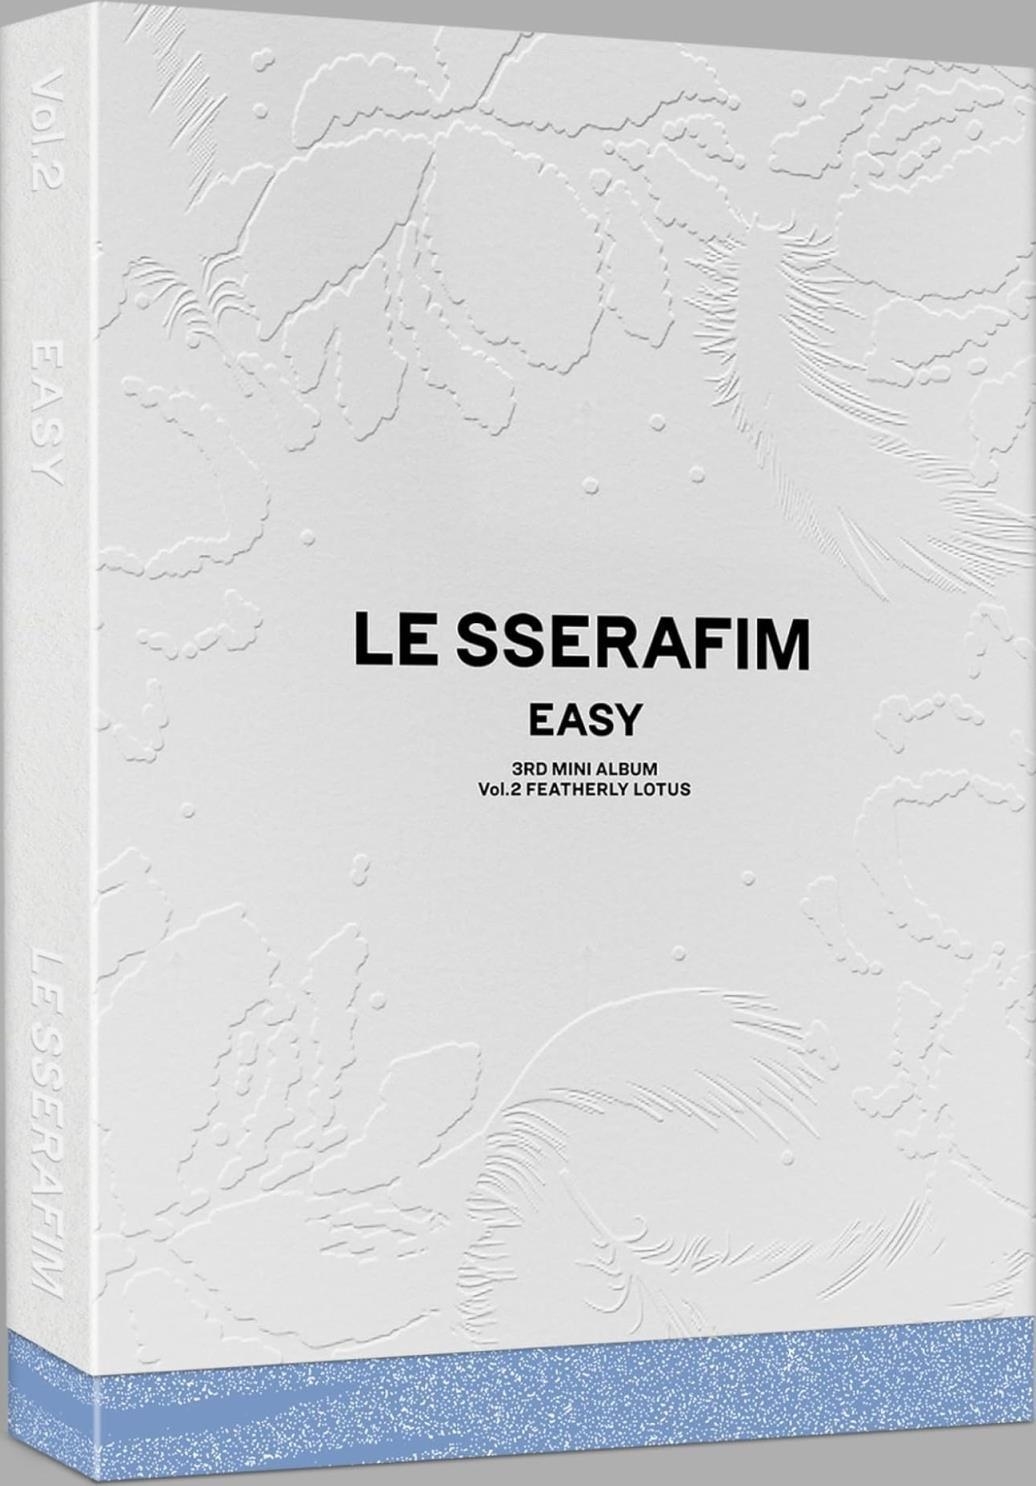 Audio Cd Le Sserafim - 3Rd Mini Album 'Easy' (Vol. 2) NUOVO SIGILLATO, EDIZIONE DEL 23/02/2024 SUBITO DISPONIBILE